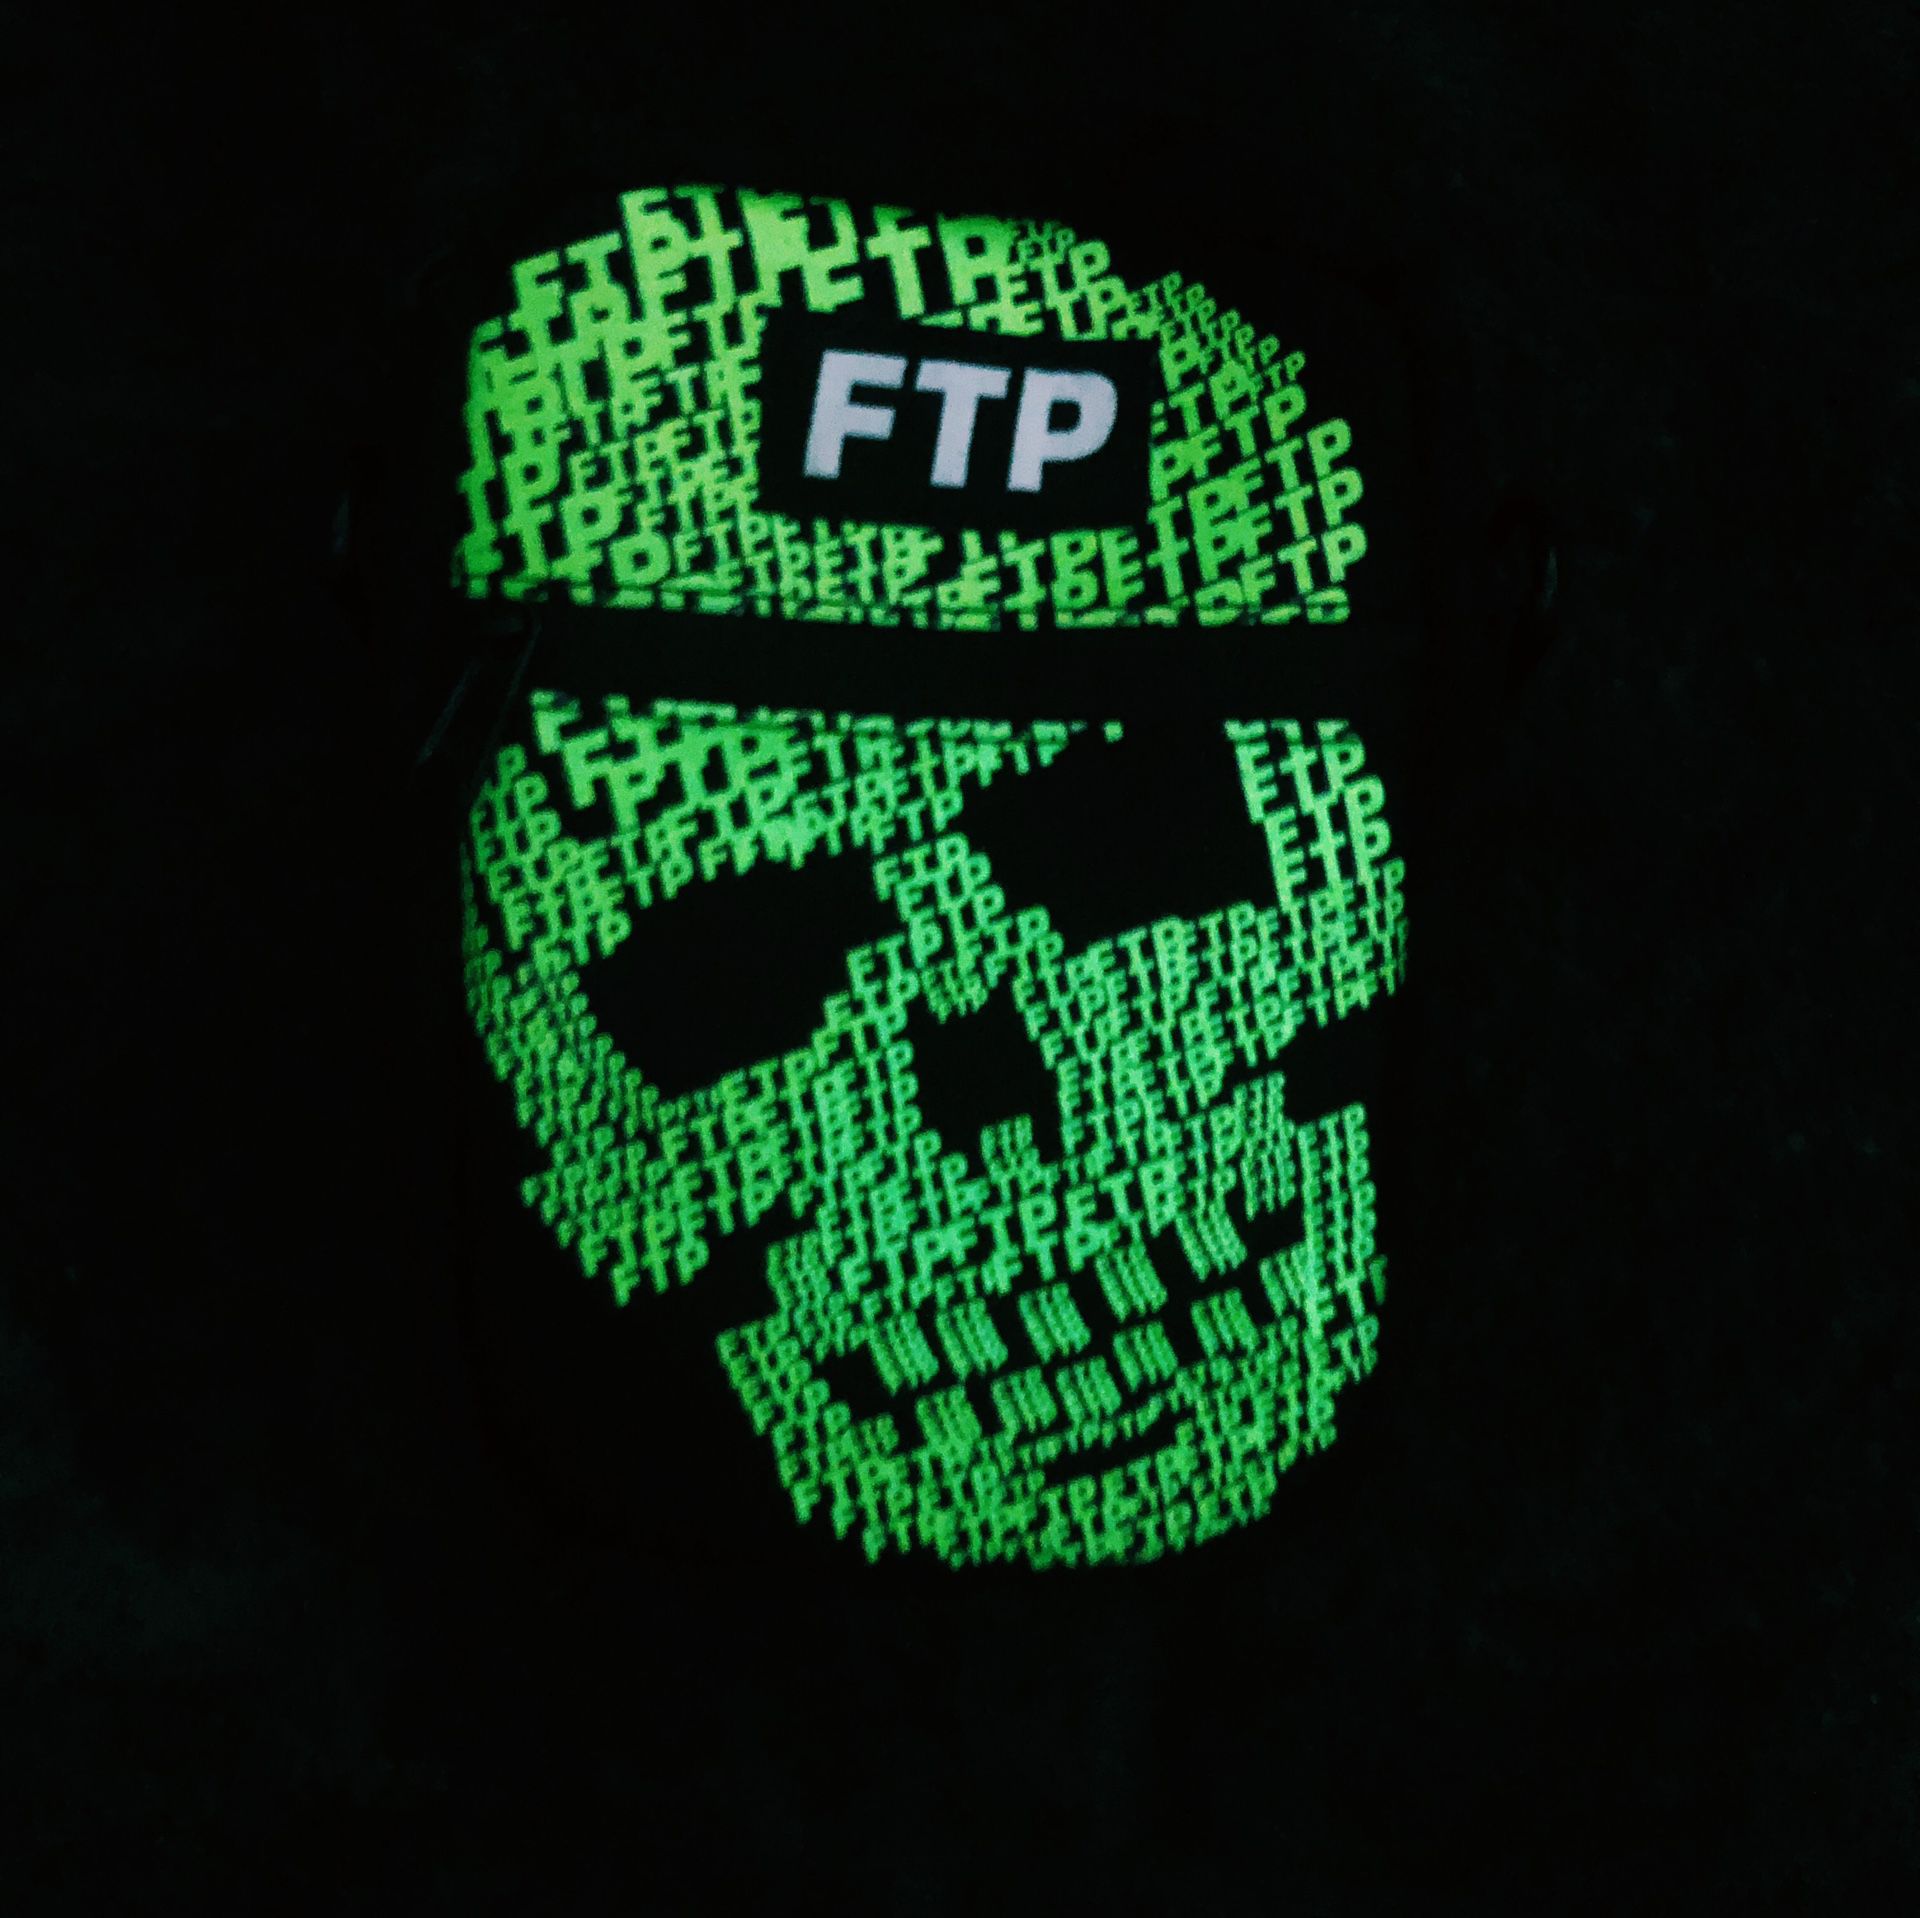 FTP Glow in the Dark Skull Side Bag Black